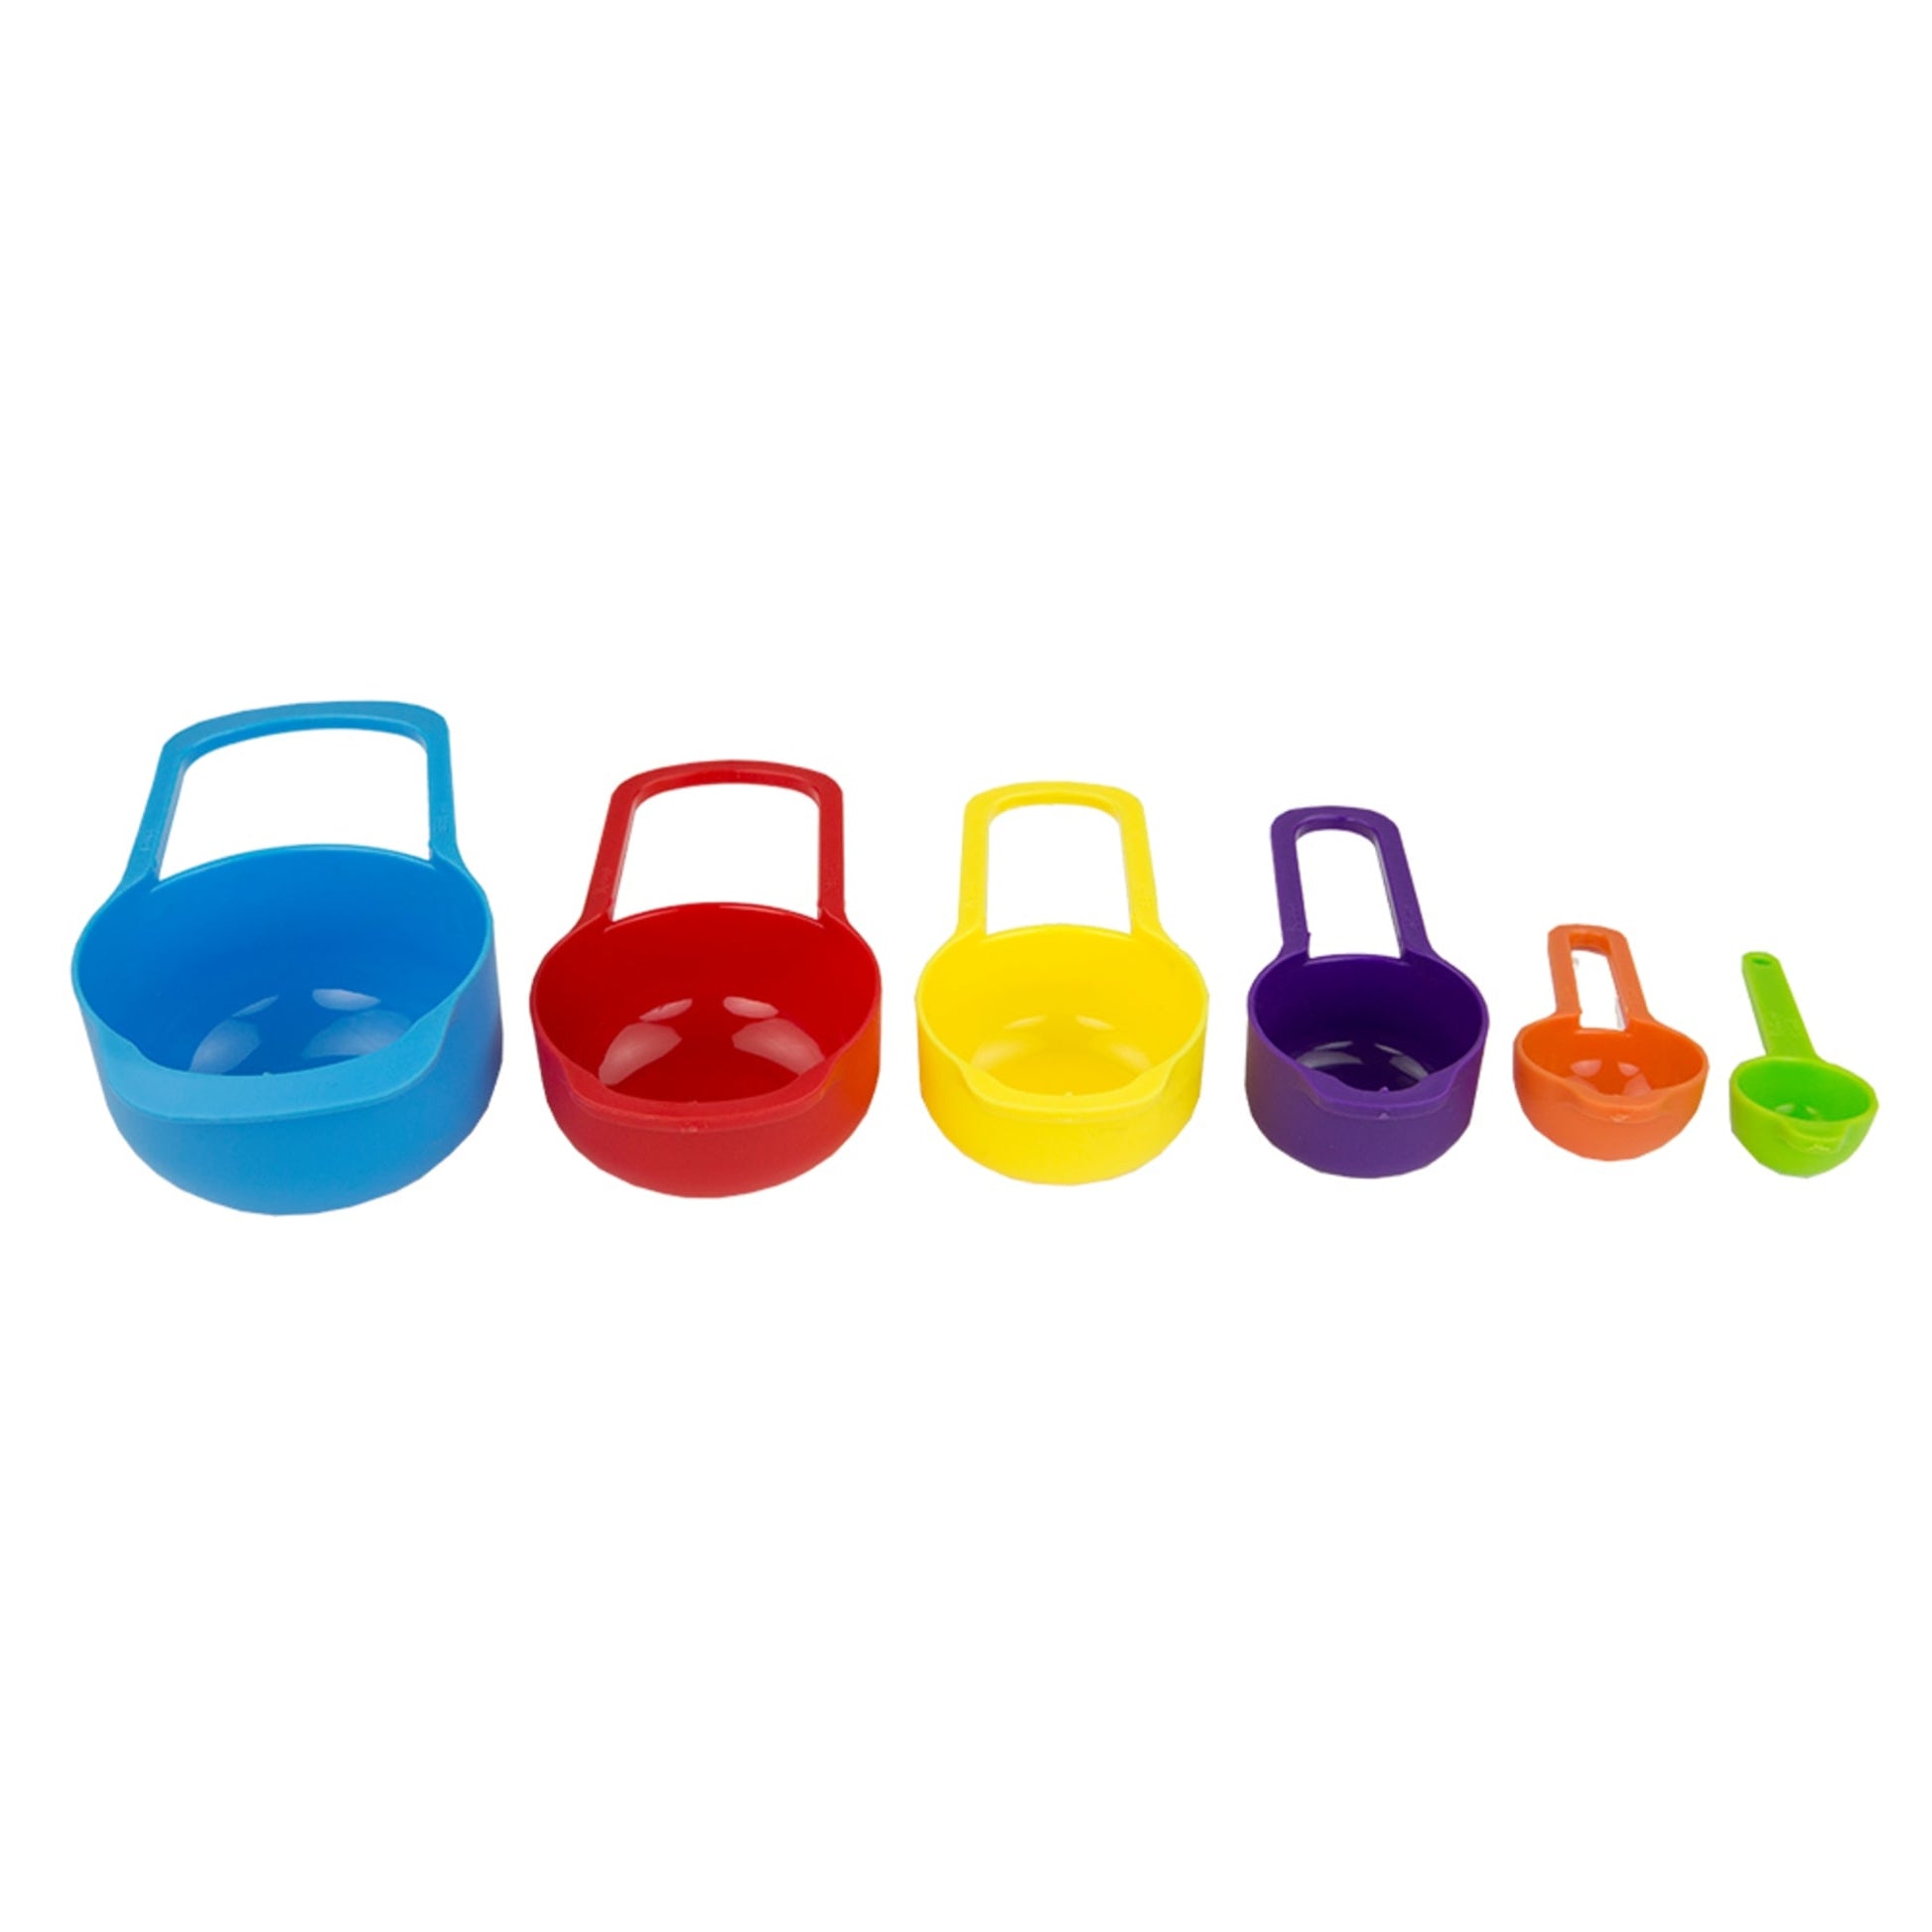 6 Piece Plastic Measuring Cup Set, Multi-Colored, FOOD PREP